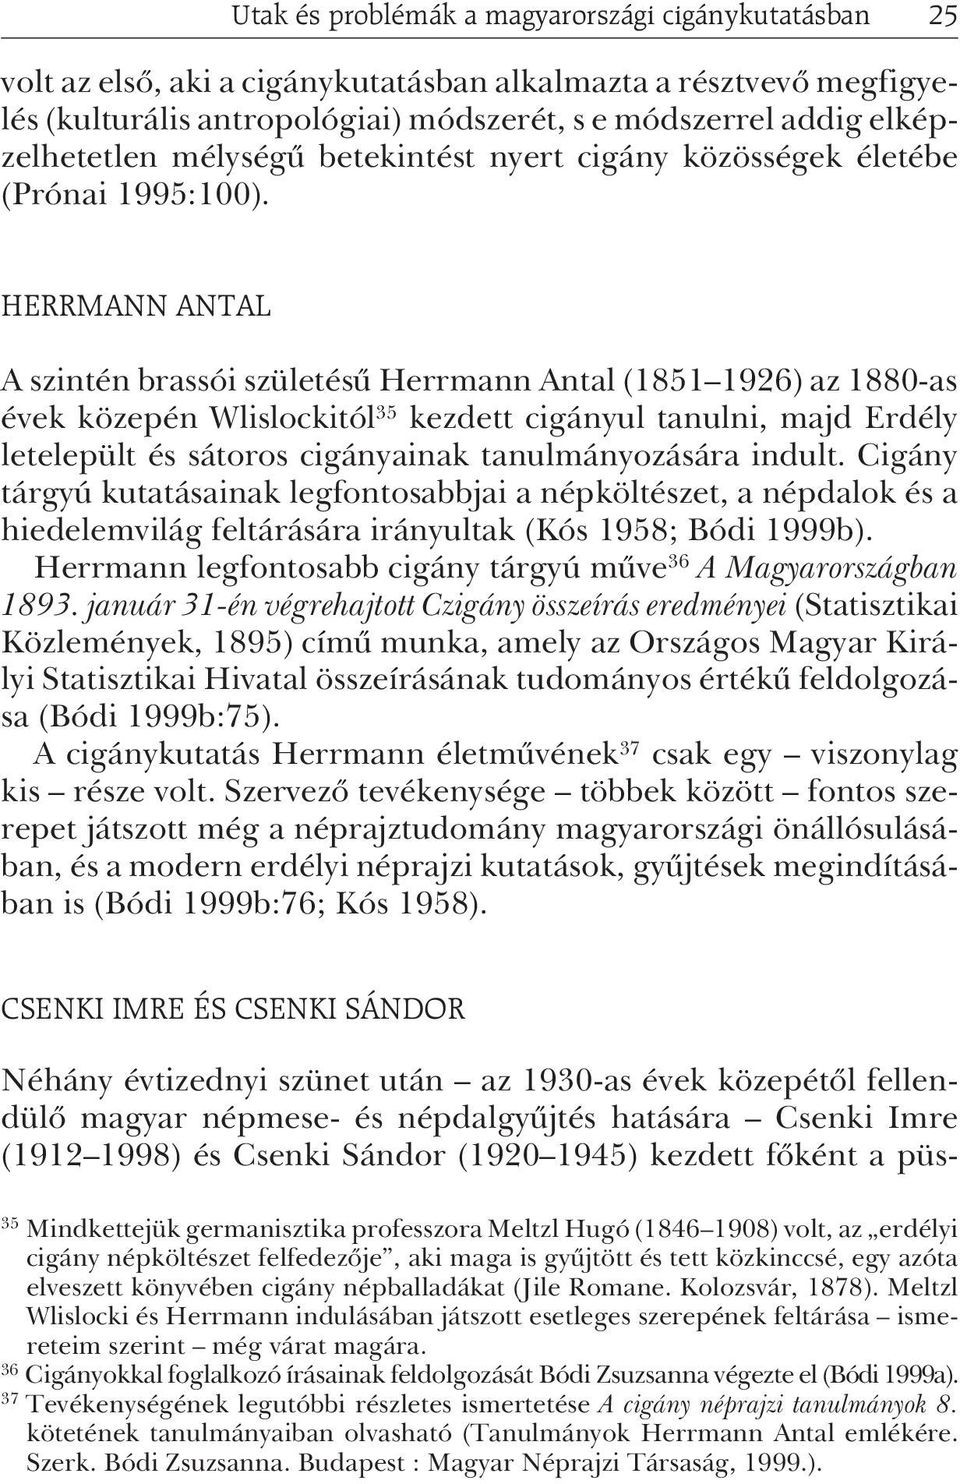 HERRMANN ANTAL A szintén brassói születésû Herrmann Antal (1851 1926) az 1880-as évek közepén Wlislockitól 35 kezdett cigányul tanulni, majd Erdély letelepült és sátoros cigányainak tanulmányozására